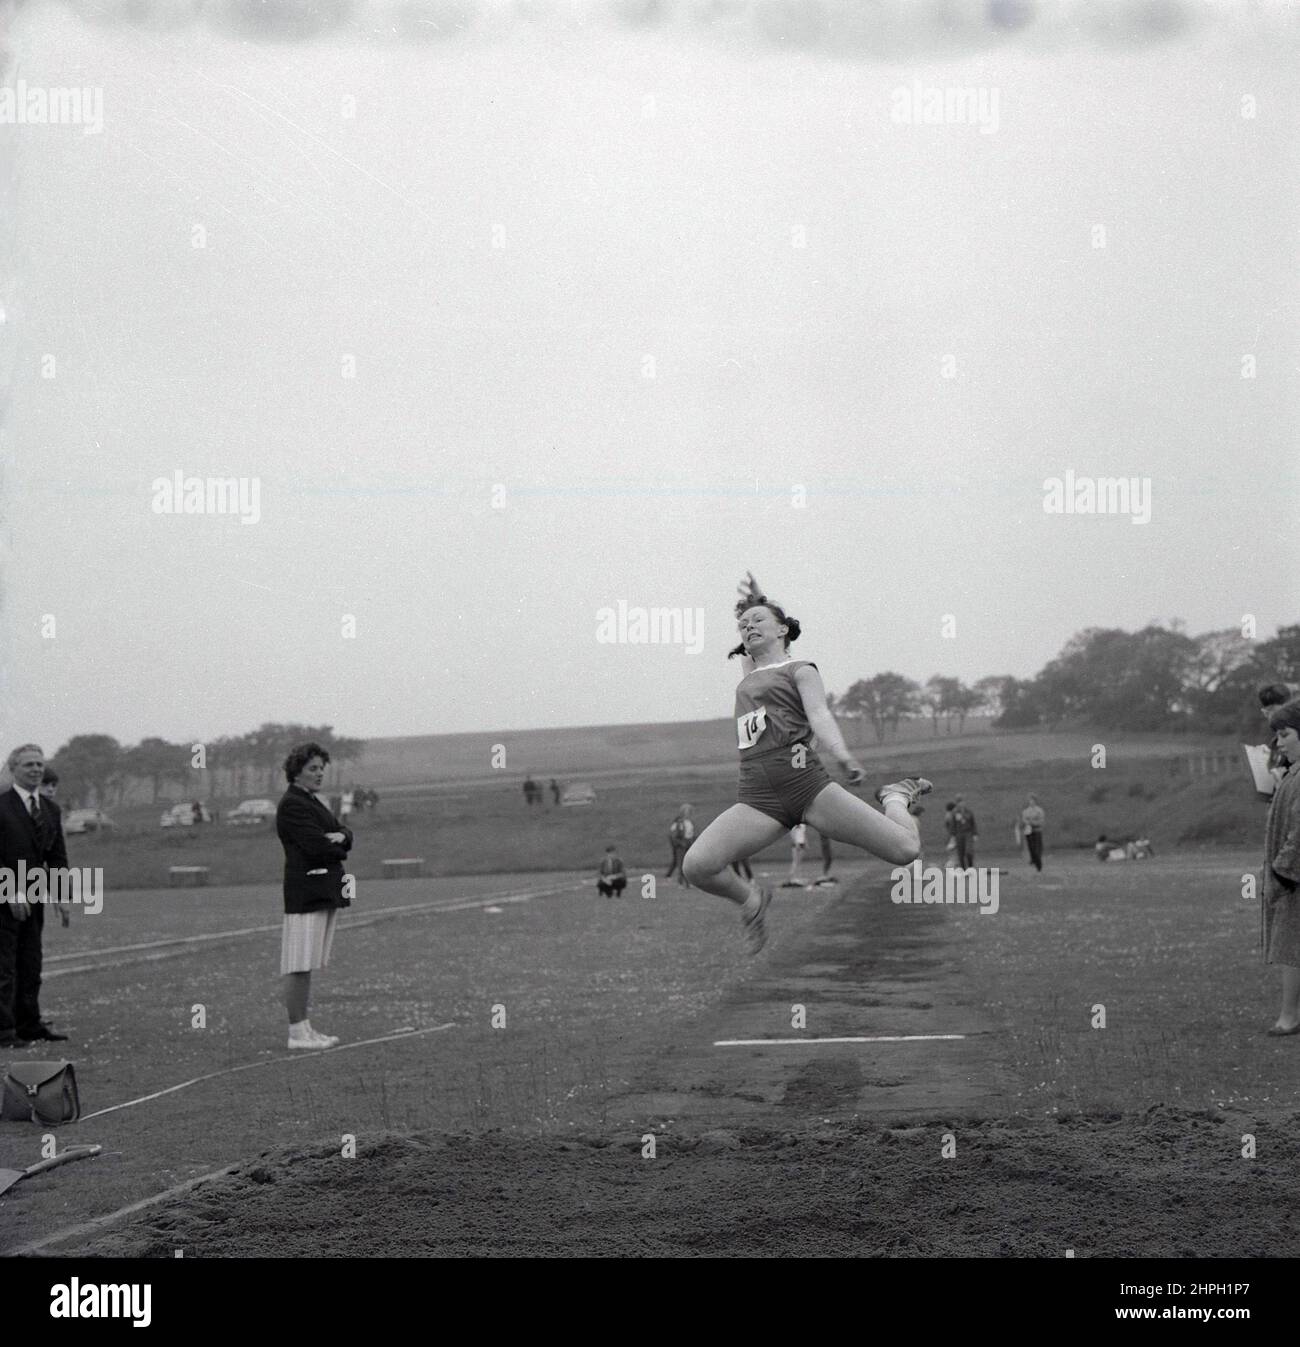 1960s, historique, une athlète féminine à mi-parcours faisant le long saut, Fife, Écosse, Royaume-Uni. La vitesse, la force et l'agilité sont toutes nécessaires dans cet événement sur piste et sur le terrain, où l'objectif est de sauter le plus loin possible d'un point de décollage, où nous voyons ici une dame officielle debout en face. Un événement masculin dans les premiers Jeux Olympiques modernes de 1896, les femmes ont pris part pour la première fois au long saut olympique en 1948 à Londres. Banque D'Images